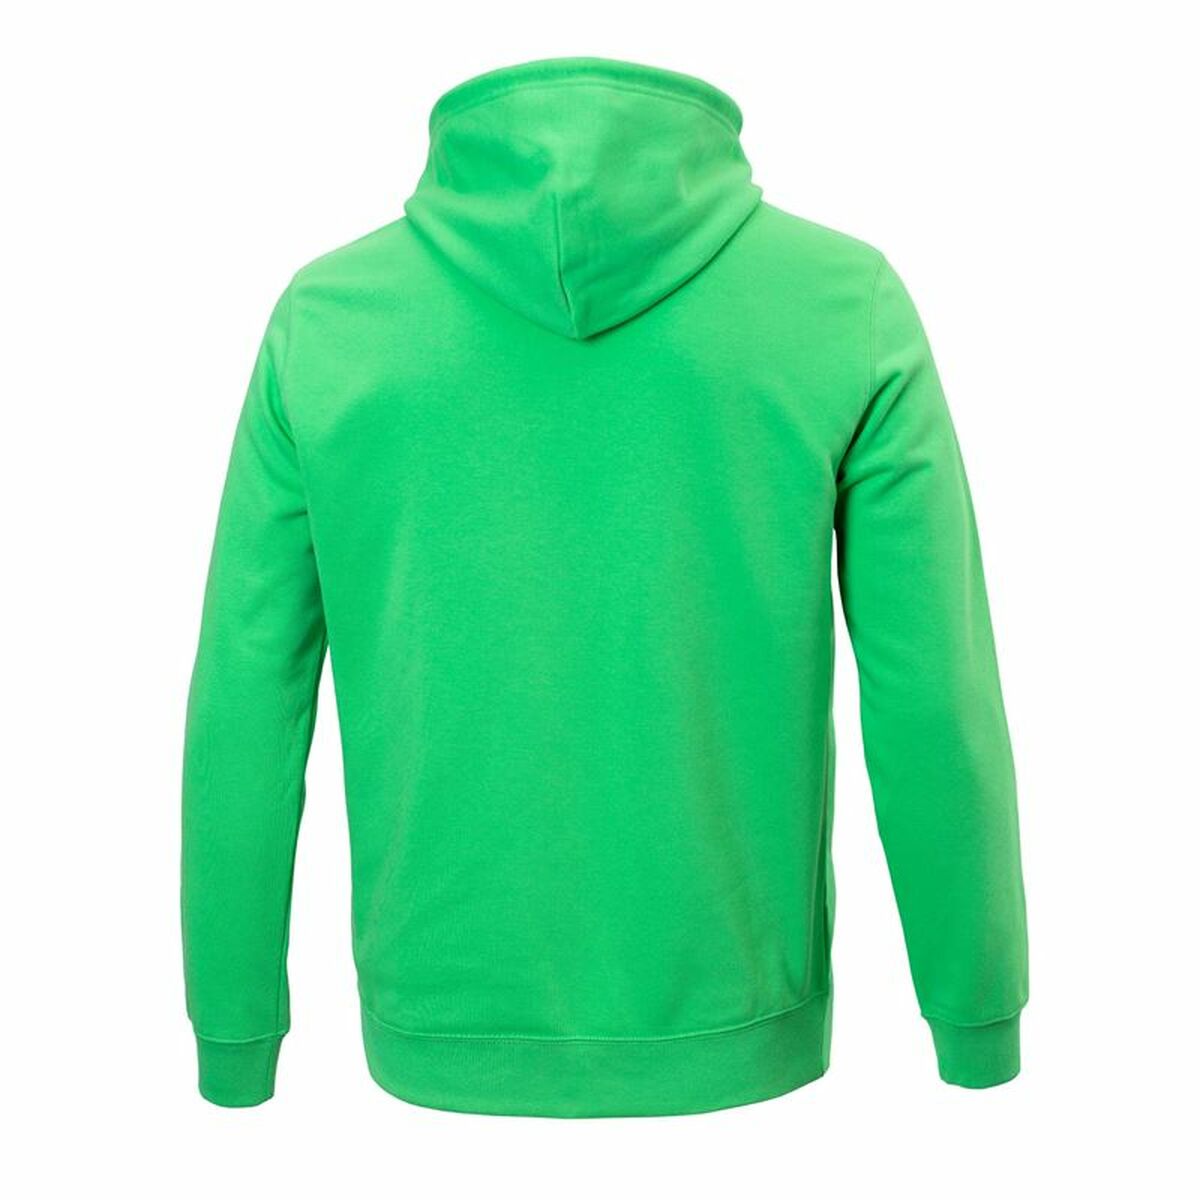 Kaufe Herren Sweater mit Kapuze Champion grün bei AWK Flagship um € 60.00